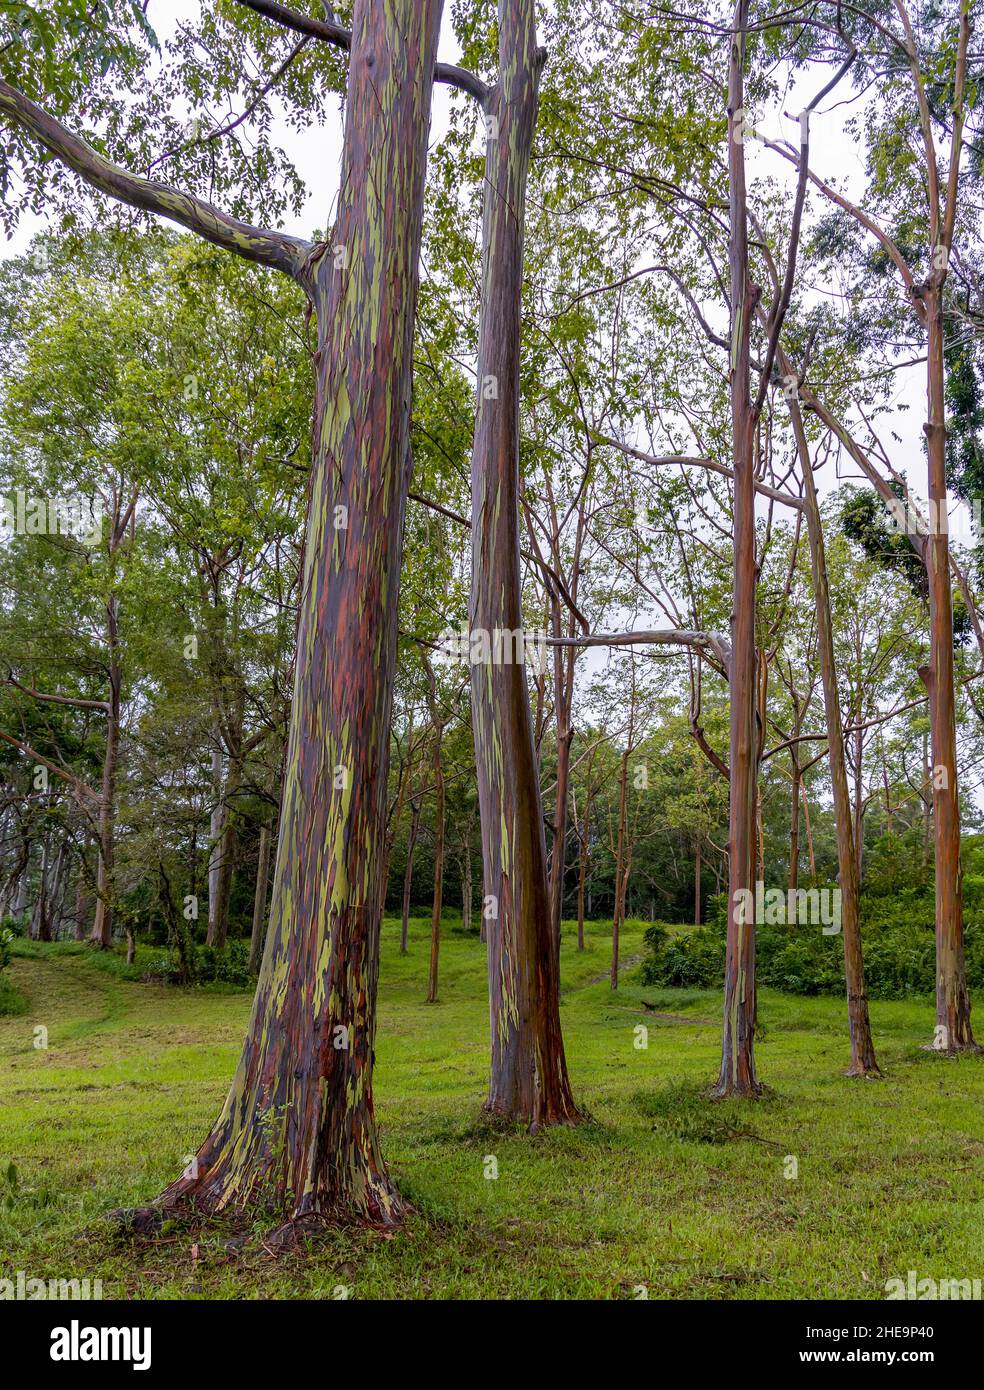 Magnifique eucalyptus arc-en-ciel dans l'arboretum Keahua sur l'île de Kauai, Hawaï Banque D'Images